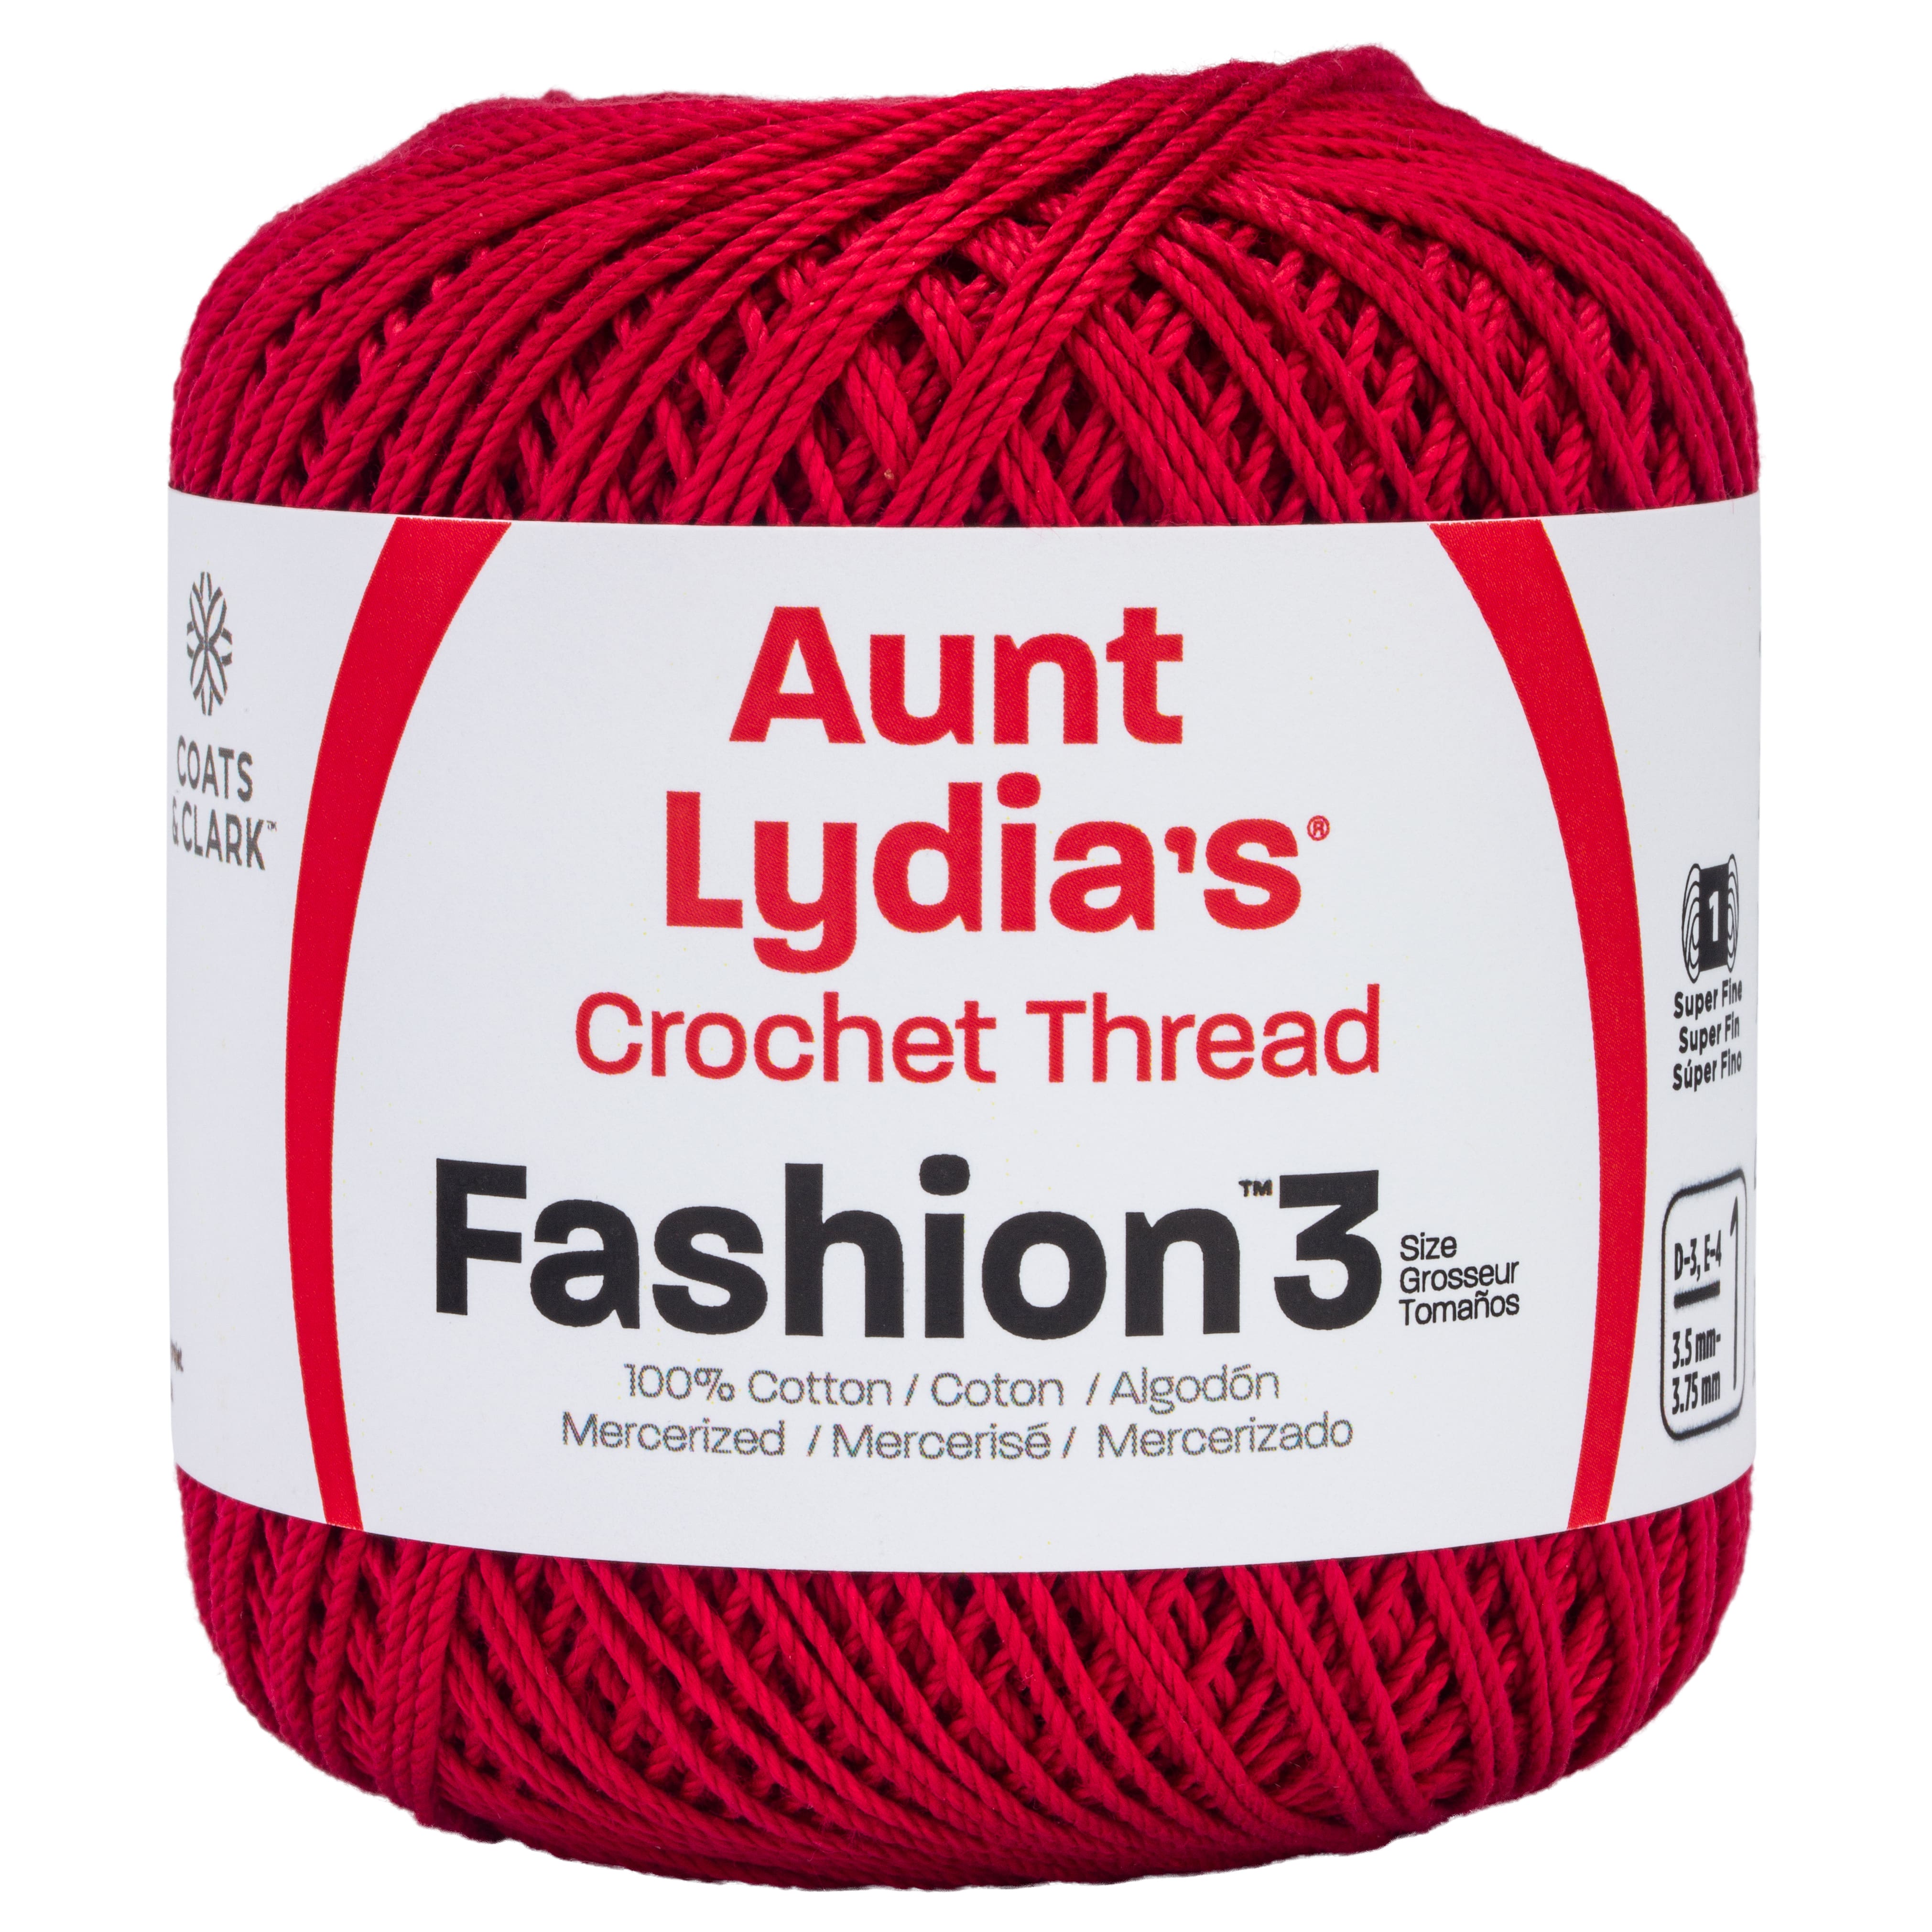 Bargin Deals On Beautful Wholesale crochet cotton lace fabric soft